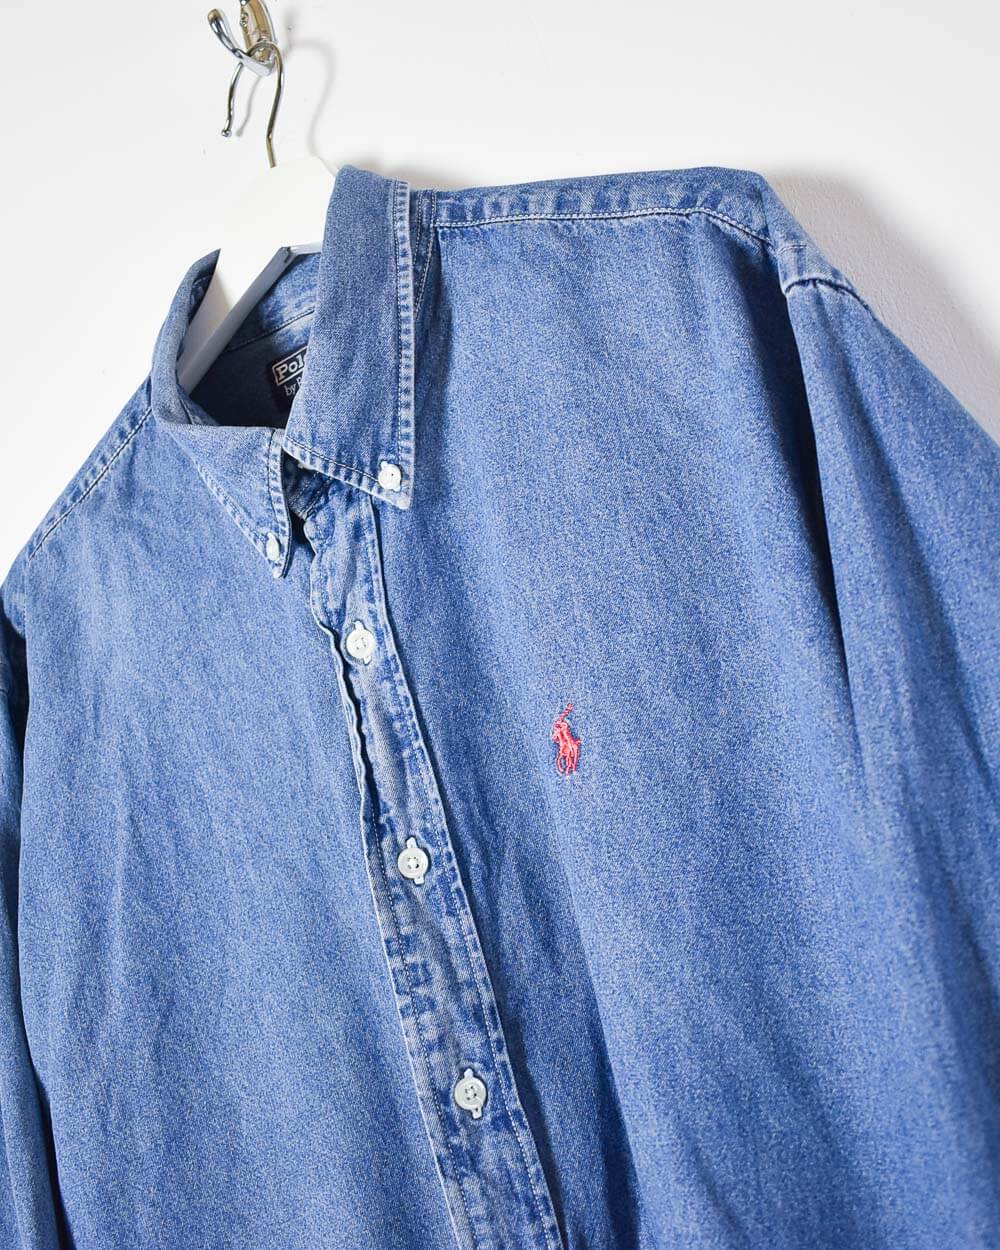 Blue Ralph Lauren Shirt - X-Large